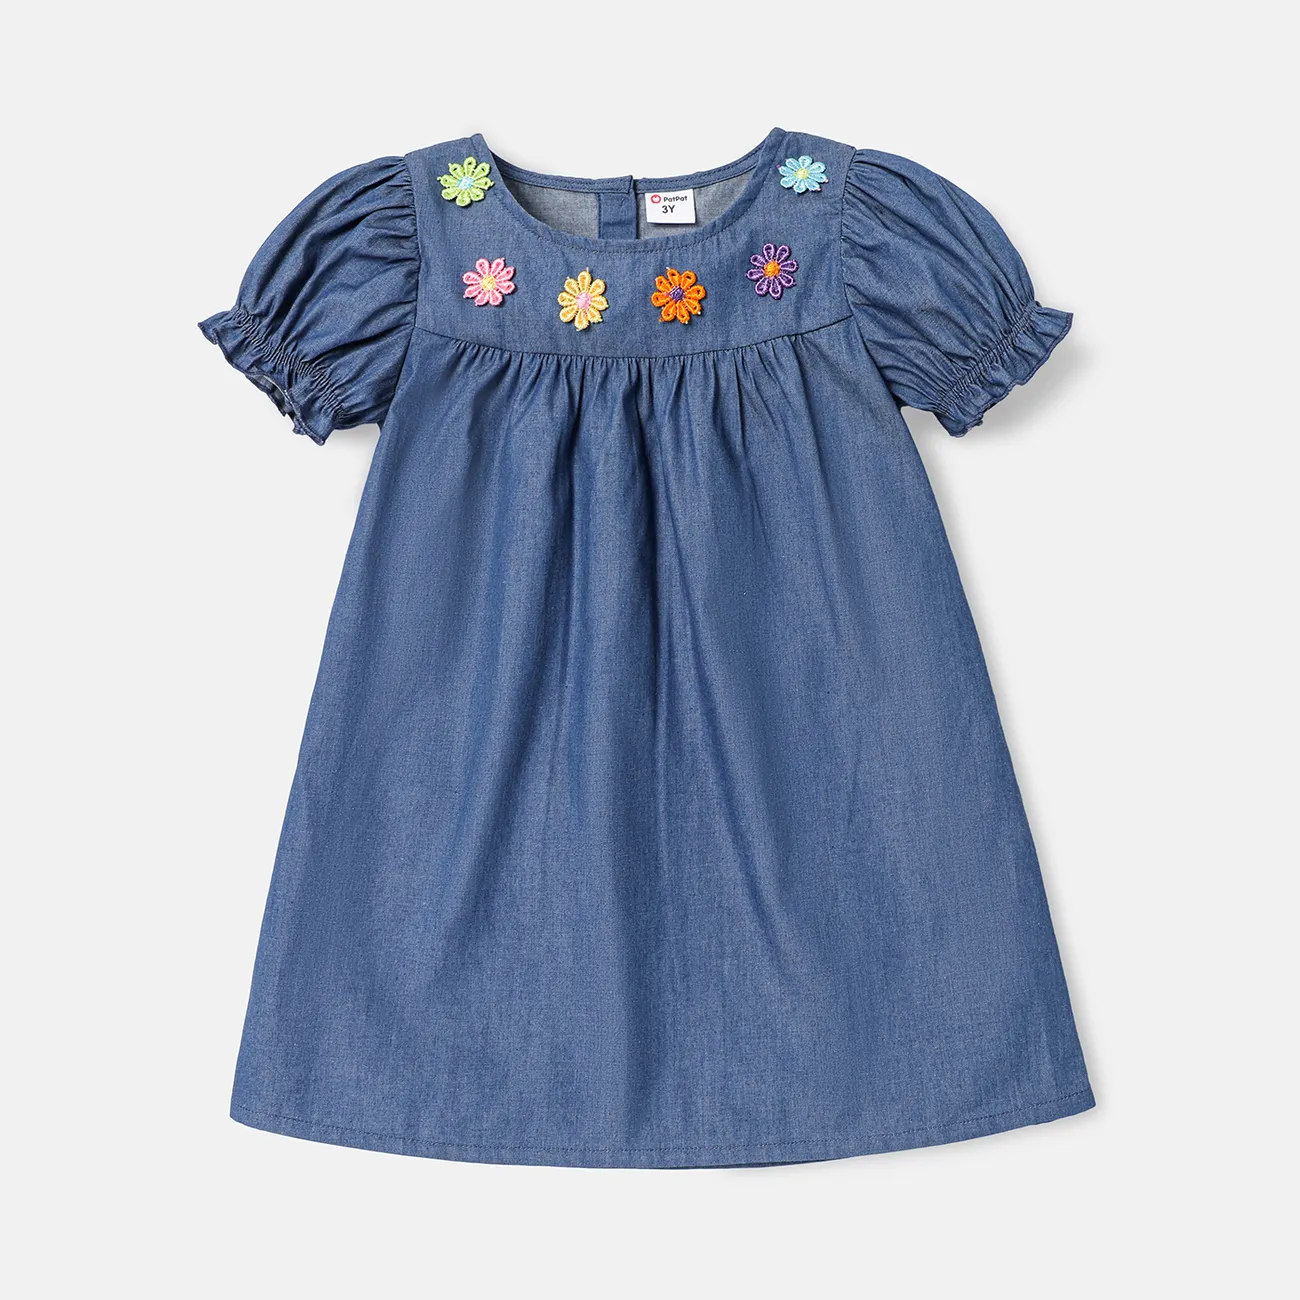 Toddler Girl 100% Cotton Floral Embroidered Short-sleeve Denim Dress  big image 1